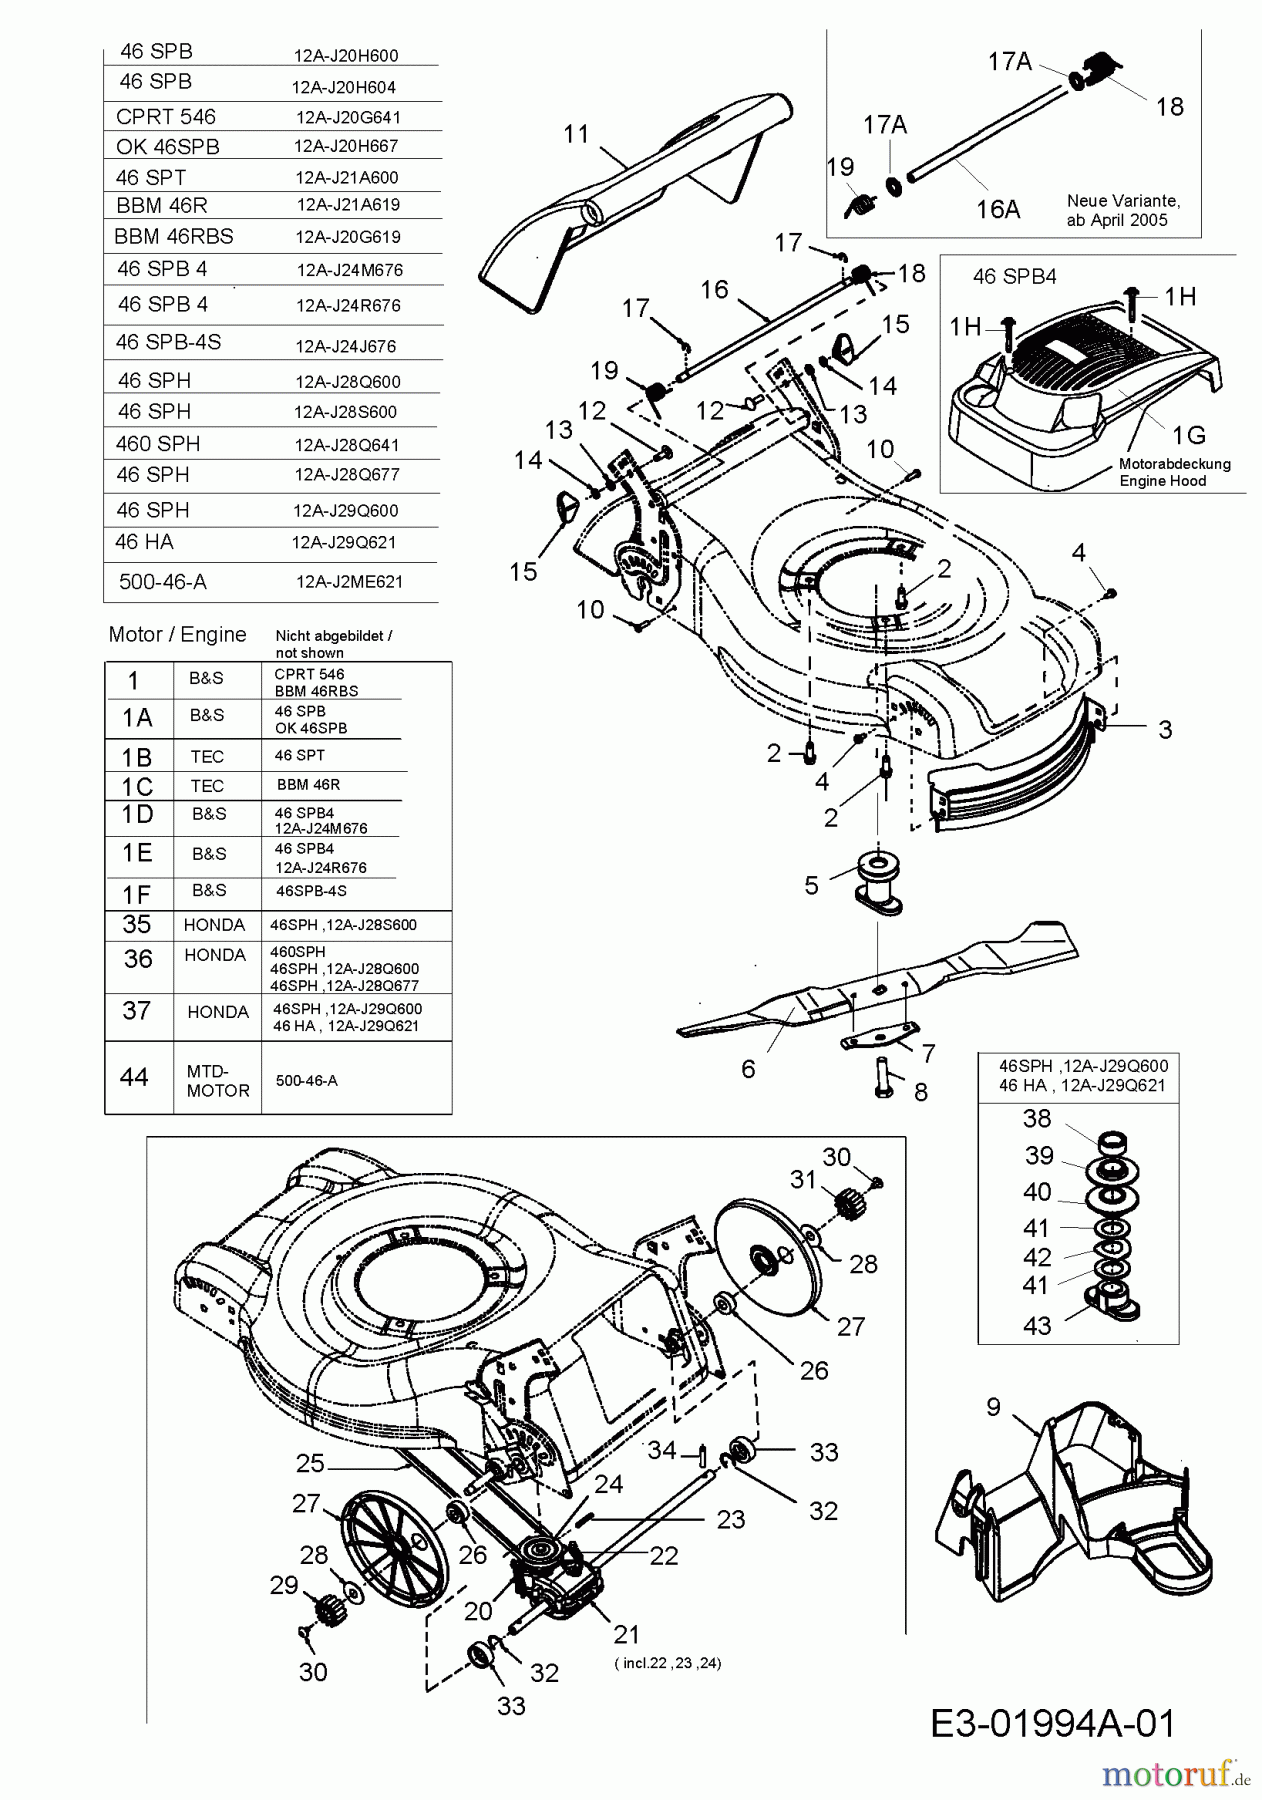  MTD Motormäher mit Antrieb 46 SPT 12A-J21A600  (2005) Getriebe, Messer, Motor